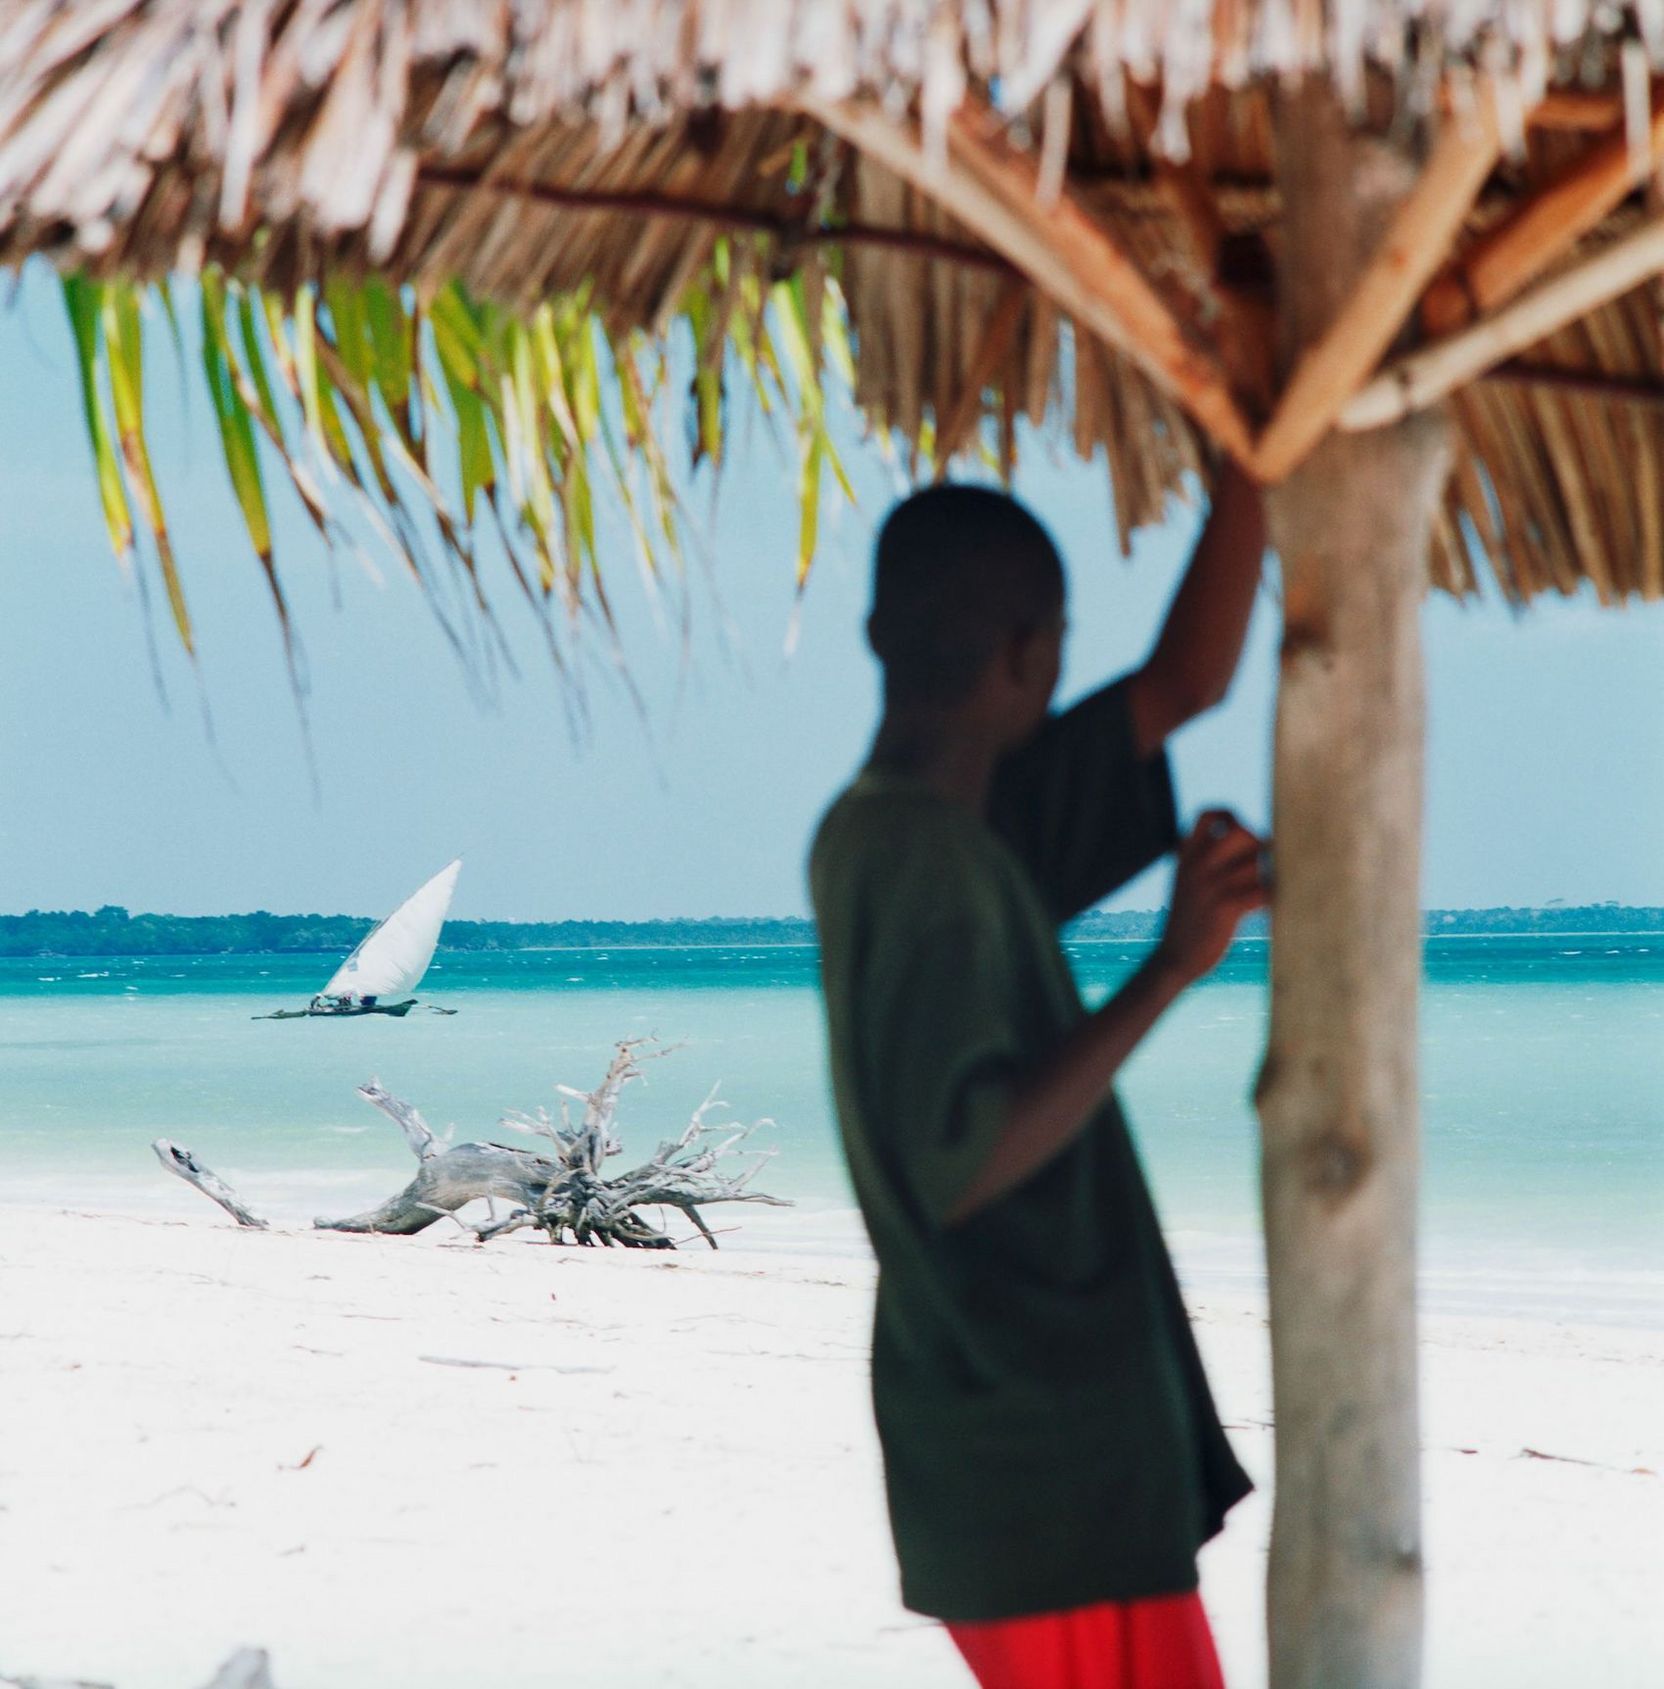 Ein Junge, der sich an einer Palme festhält am Strand, mit Blick auf ein Segelboot in Ufernähe.